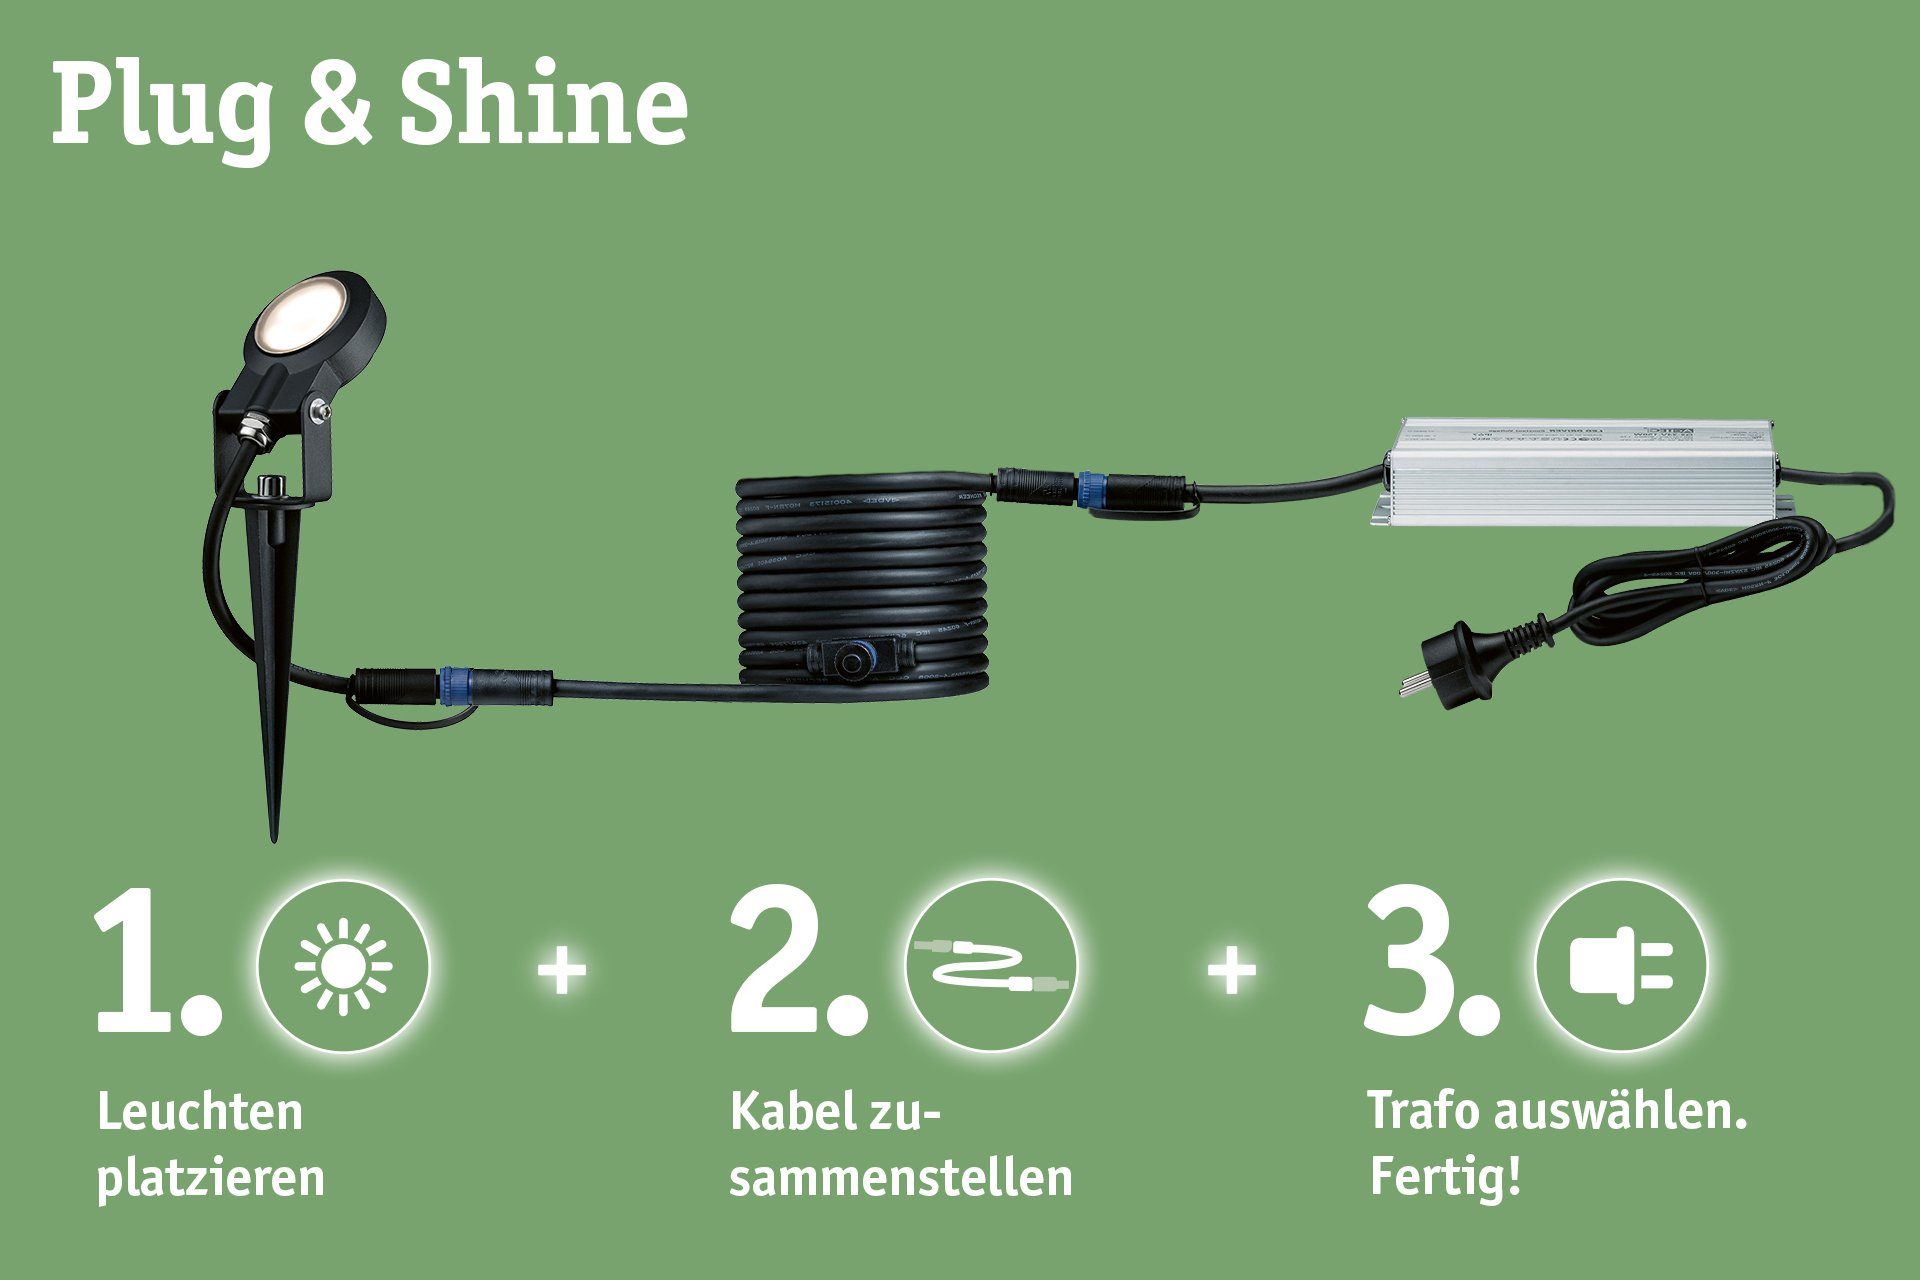 Paulmann LED integriert, & fest LED Anthrazit Shine, Plug Shine, 24V Plug Gartenstrahler & Warmweiß, 3000K LED-Modul